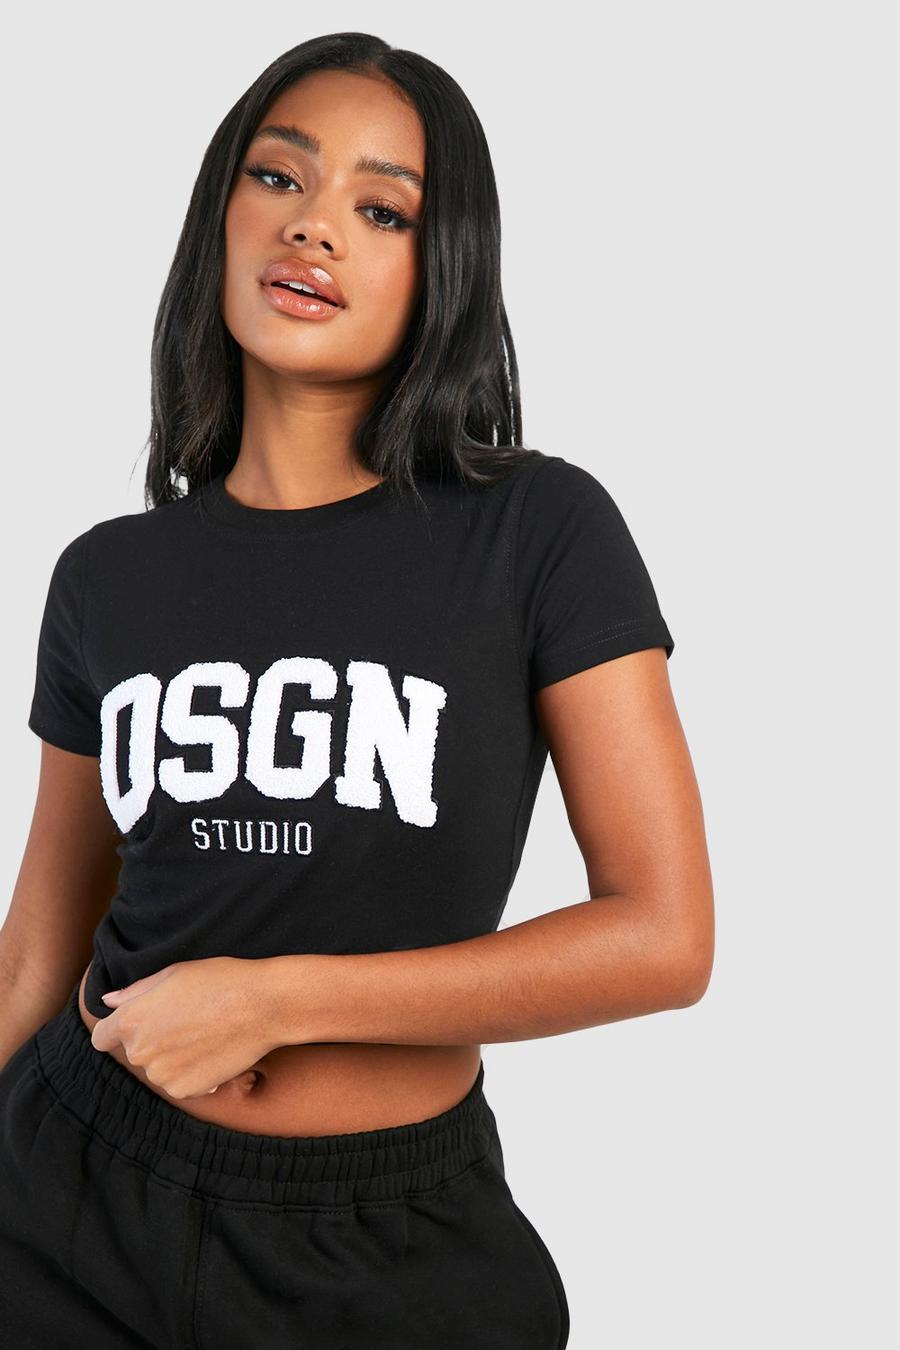 T-shirt en tissu éponge à slogan Dsgn Studio, Black